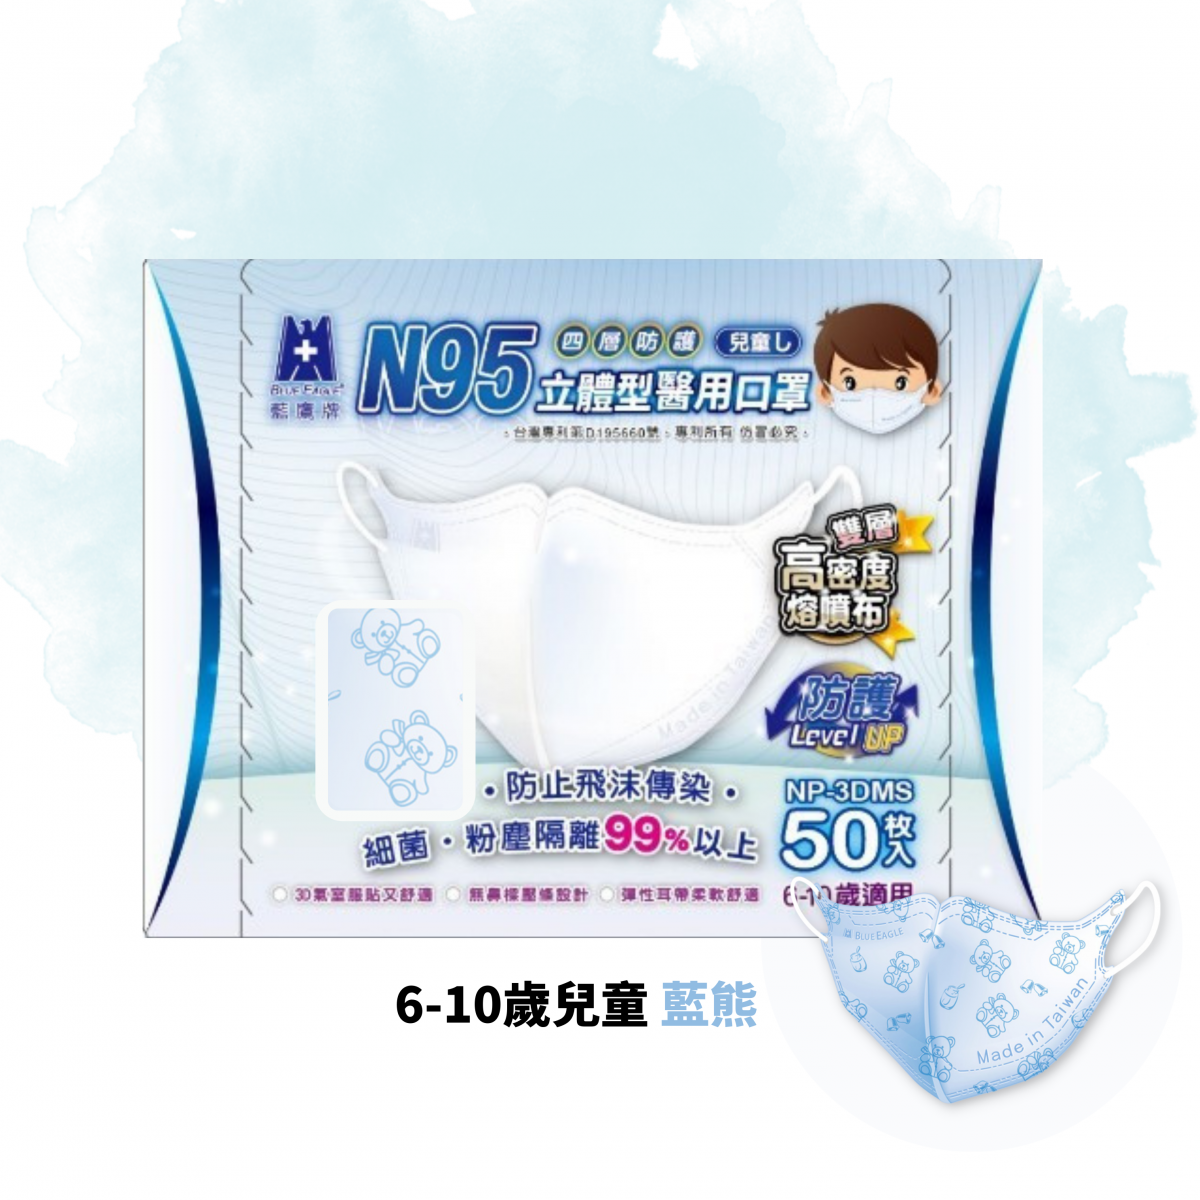 3D S 立體型兒童N95口罩(6-10歲適用)(50枚入) - 藍熊